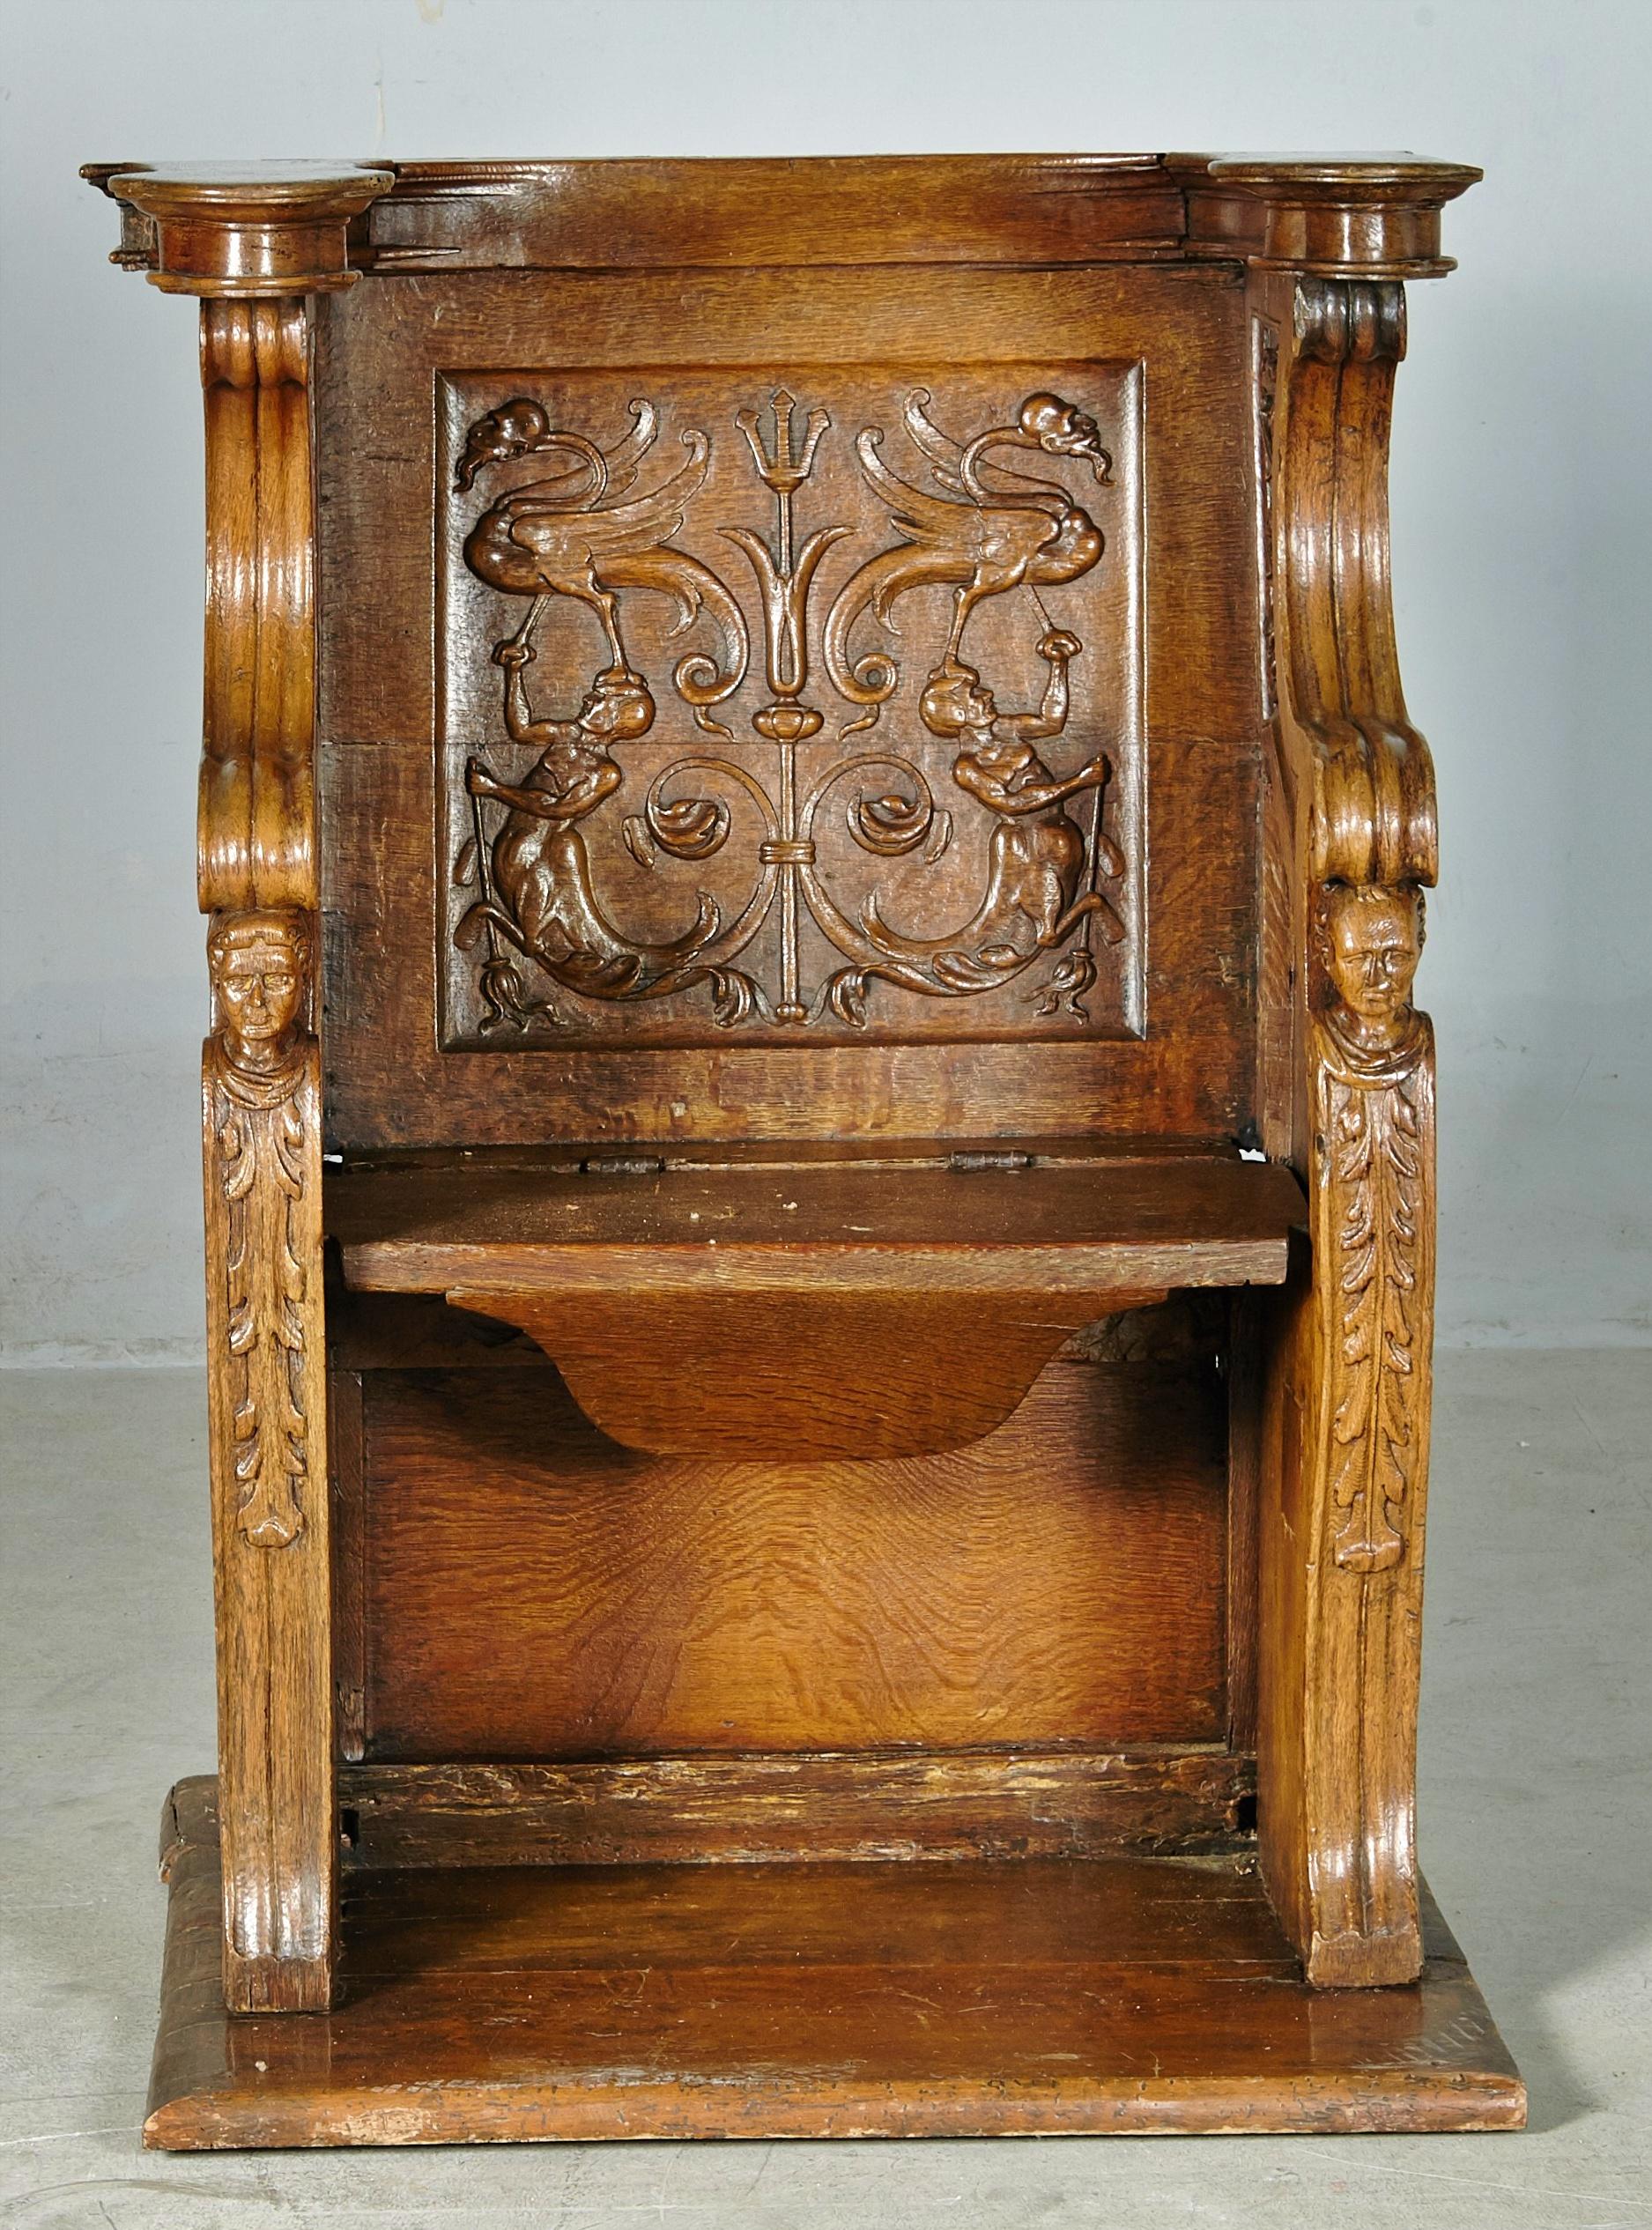 Gothic High Choir Chair in Oak Wood, Dutch Work 16th Century